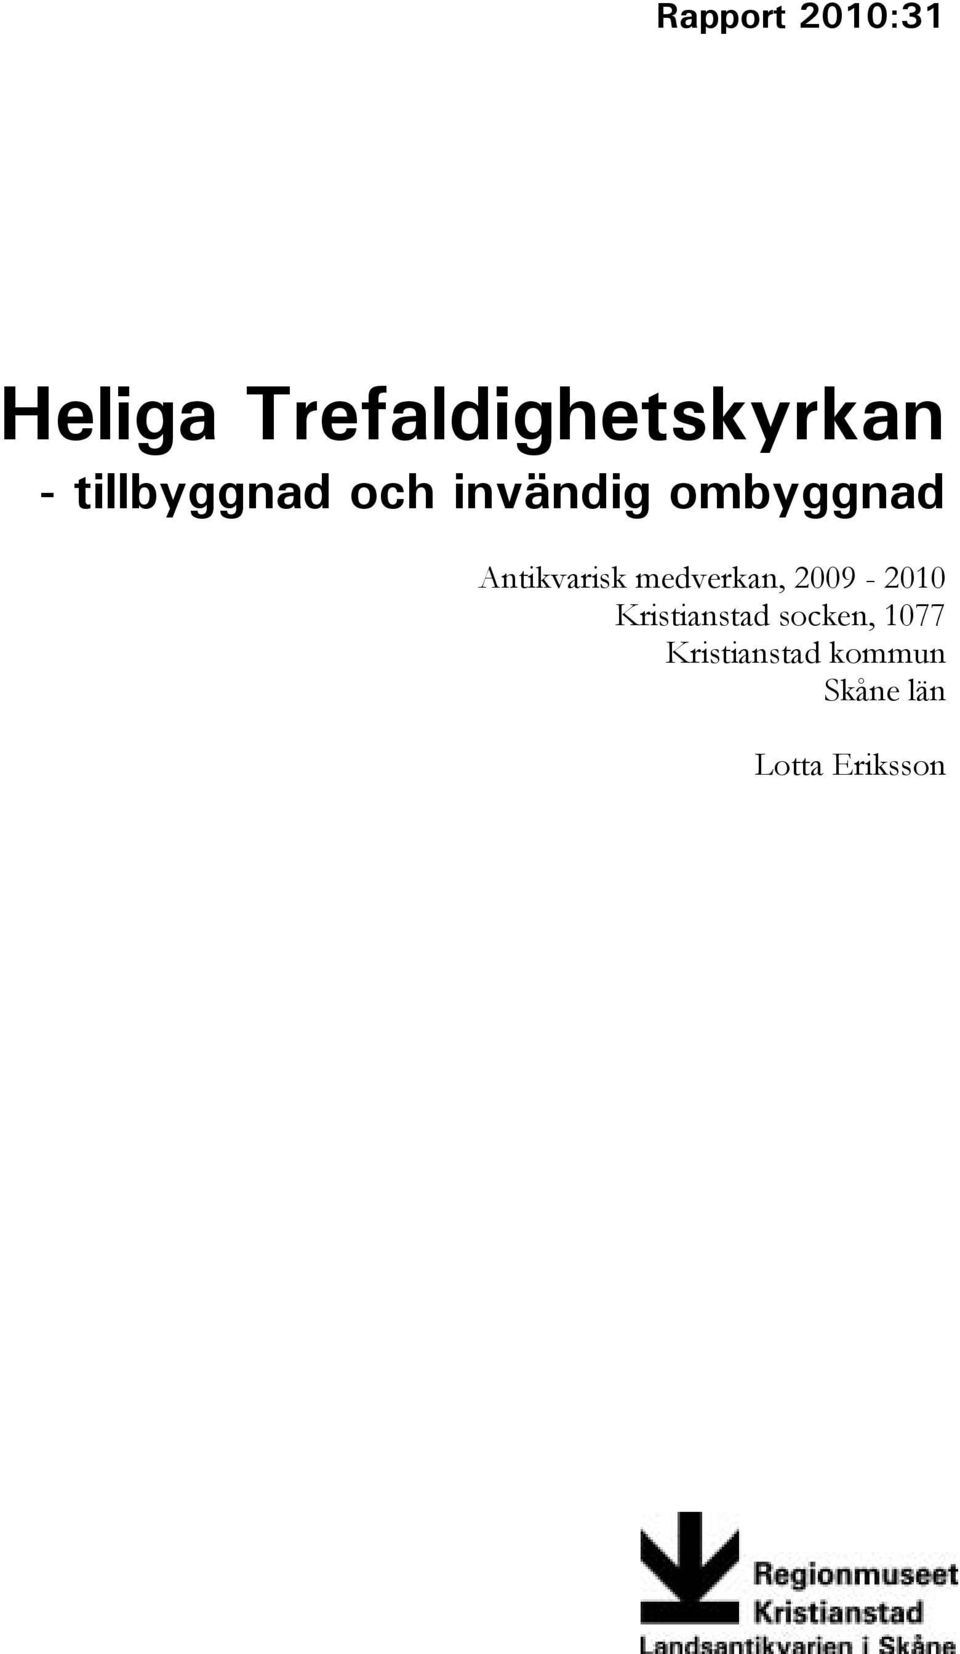 Antikvarisk medverkan, 2009-2010 Kristianstad